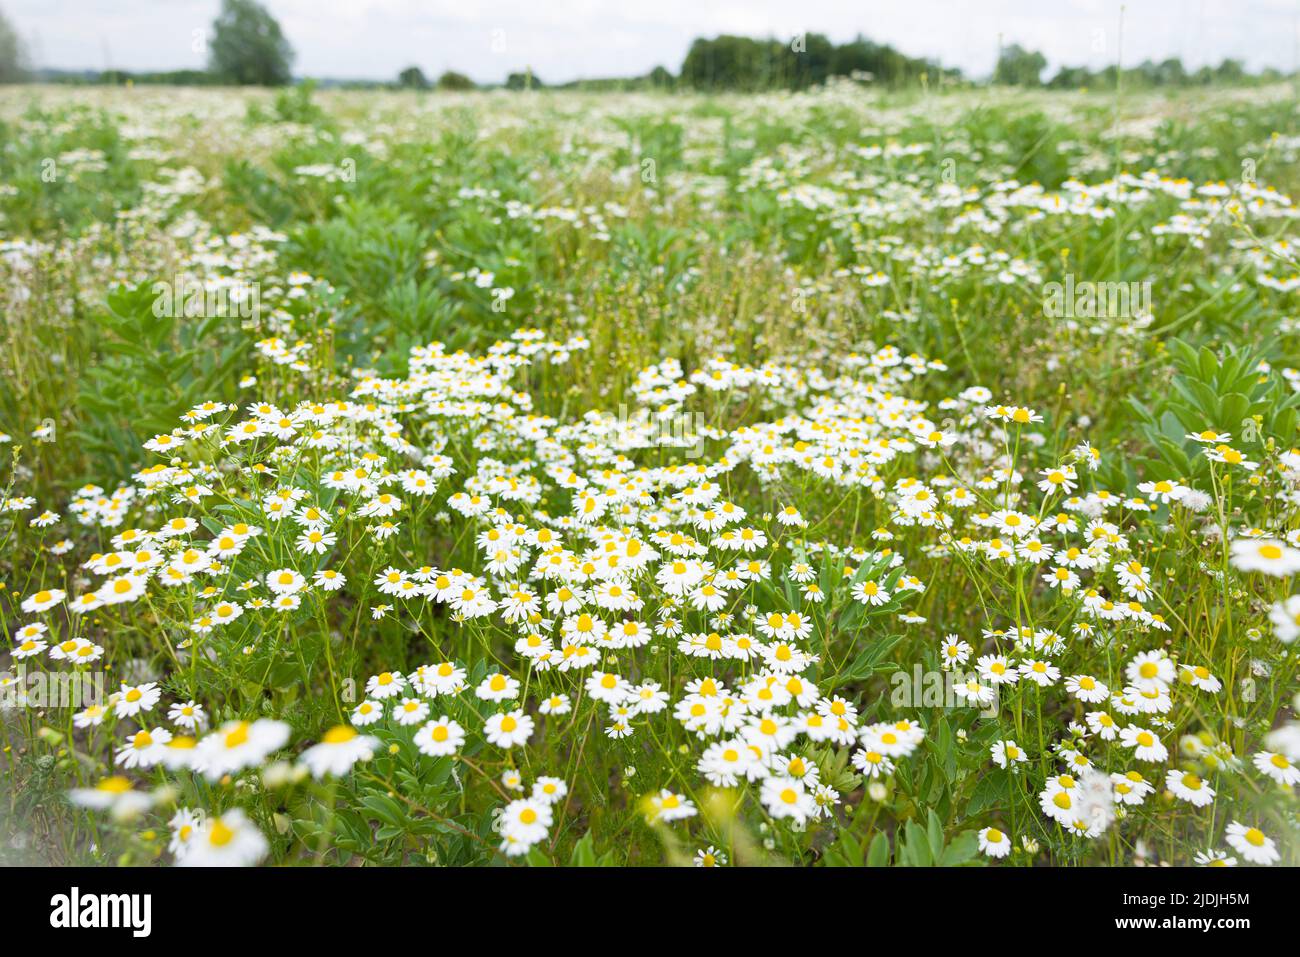 Daisy field. Wild chamomile plants, wild flowers growing in a field in UK landscape Stock Photo